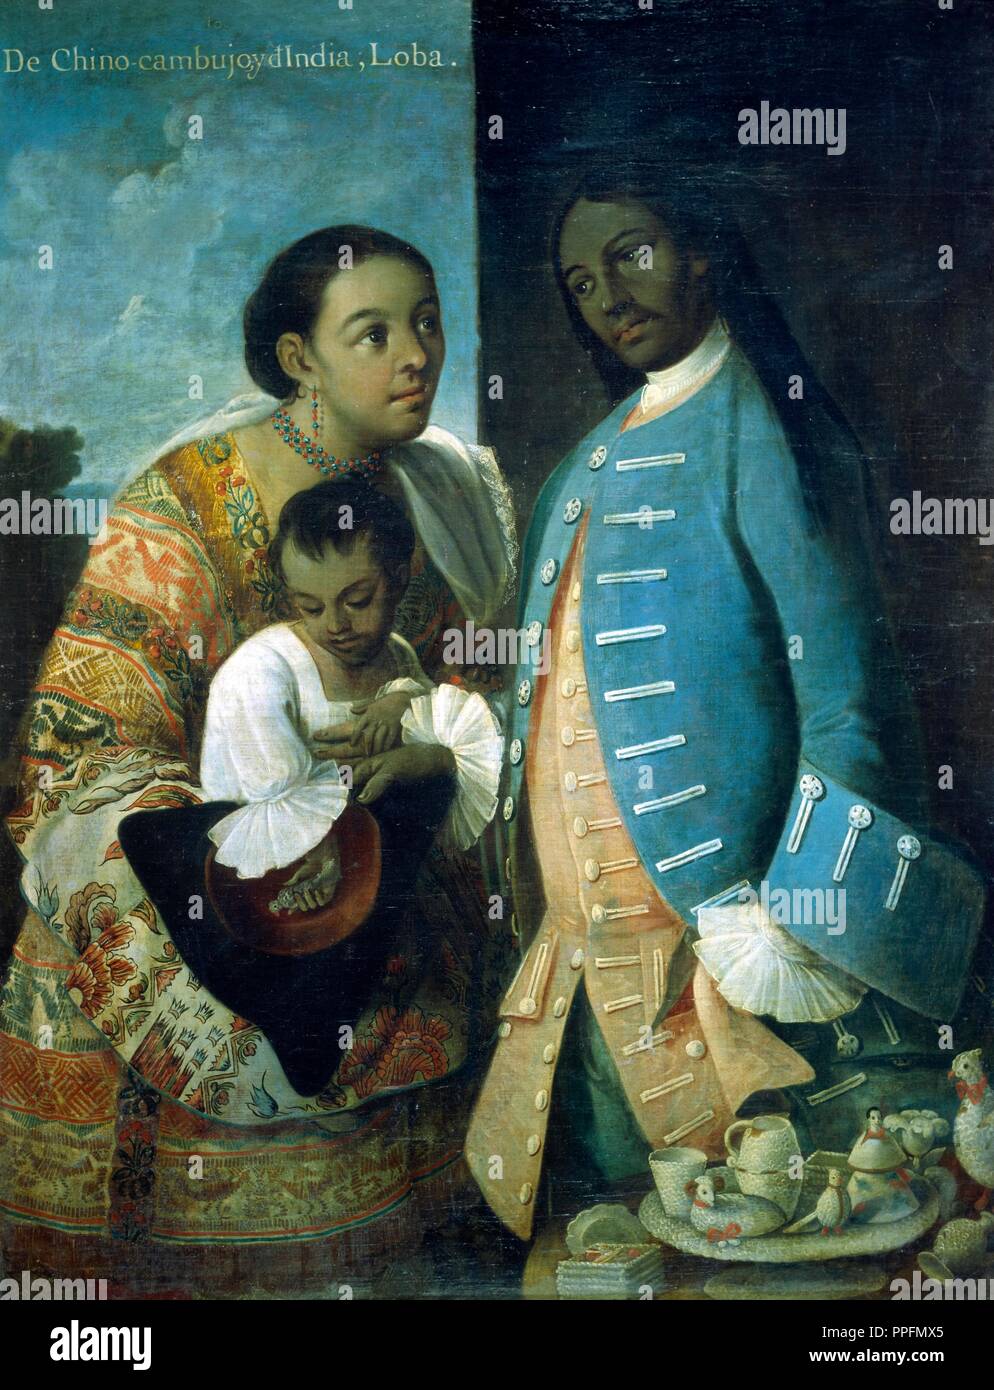 Miguel Cabrera / 'De Chino Cambujo y de India: Loba', 1763. Museum: MUSEO DE AMERICA. Stock Photo